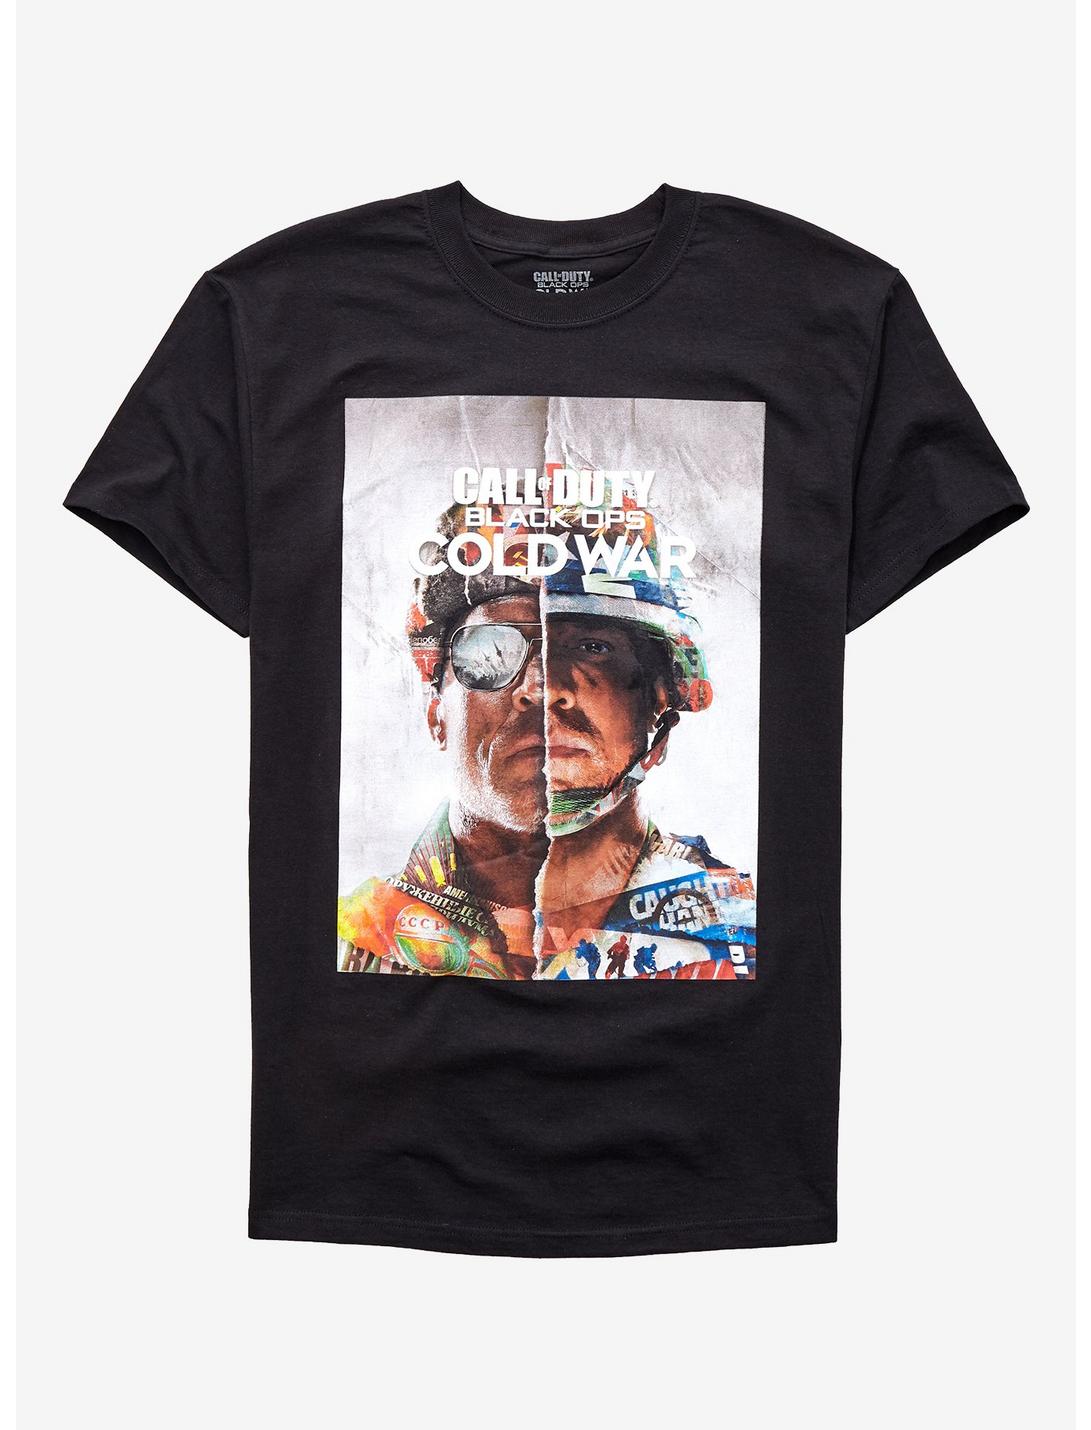 Call Of Duty: Black Ops Cold War Cover Art T-Shirt, BLACK, hi-res